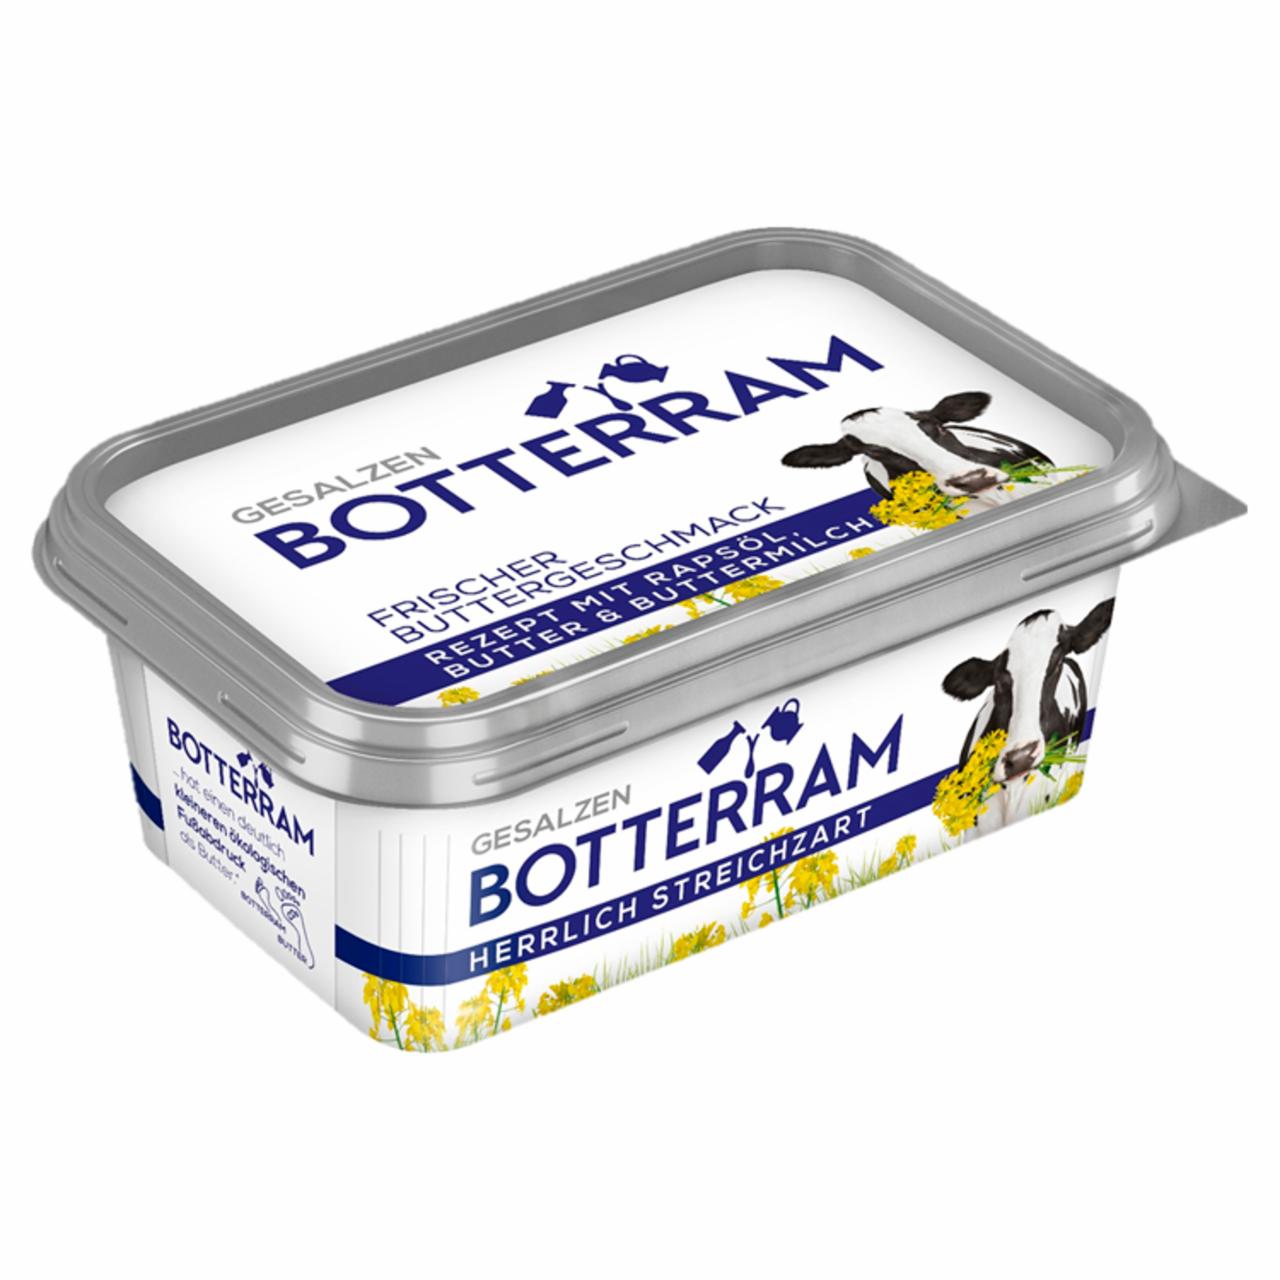 Képek - Botterram Salt 70% zsírtartalmú kenhető keverék 225 g